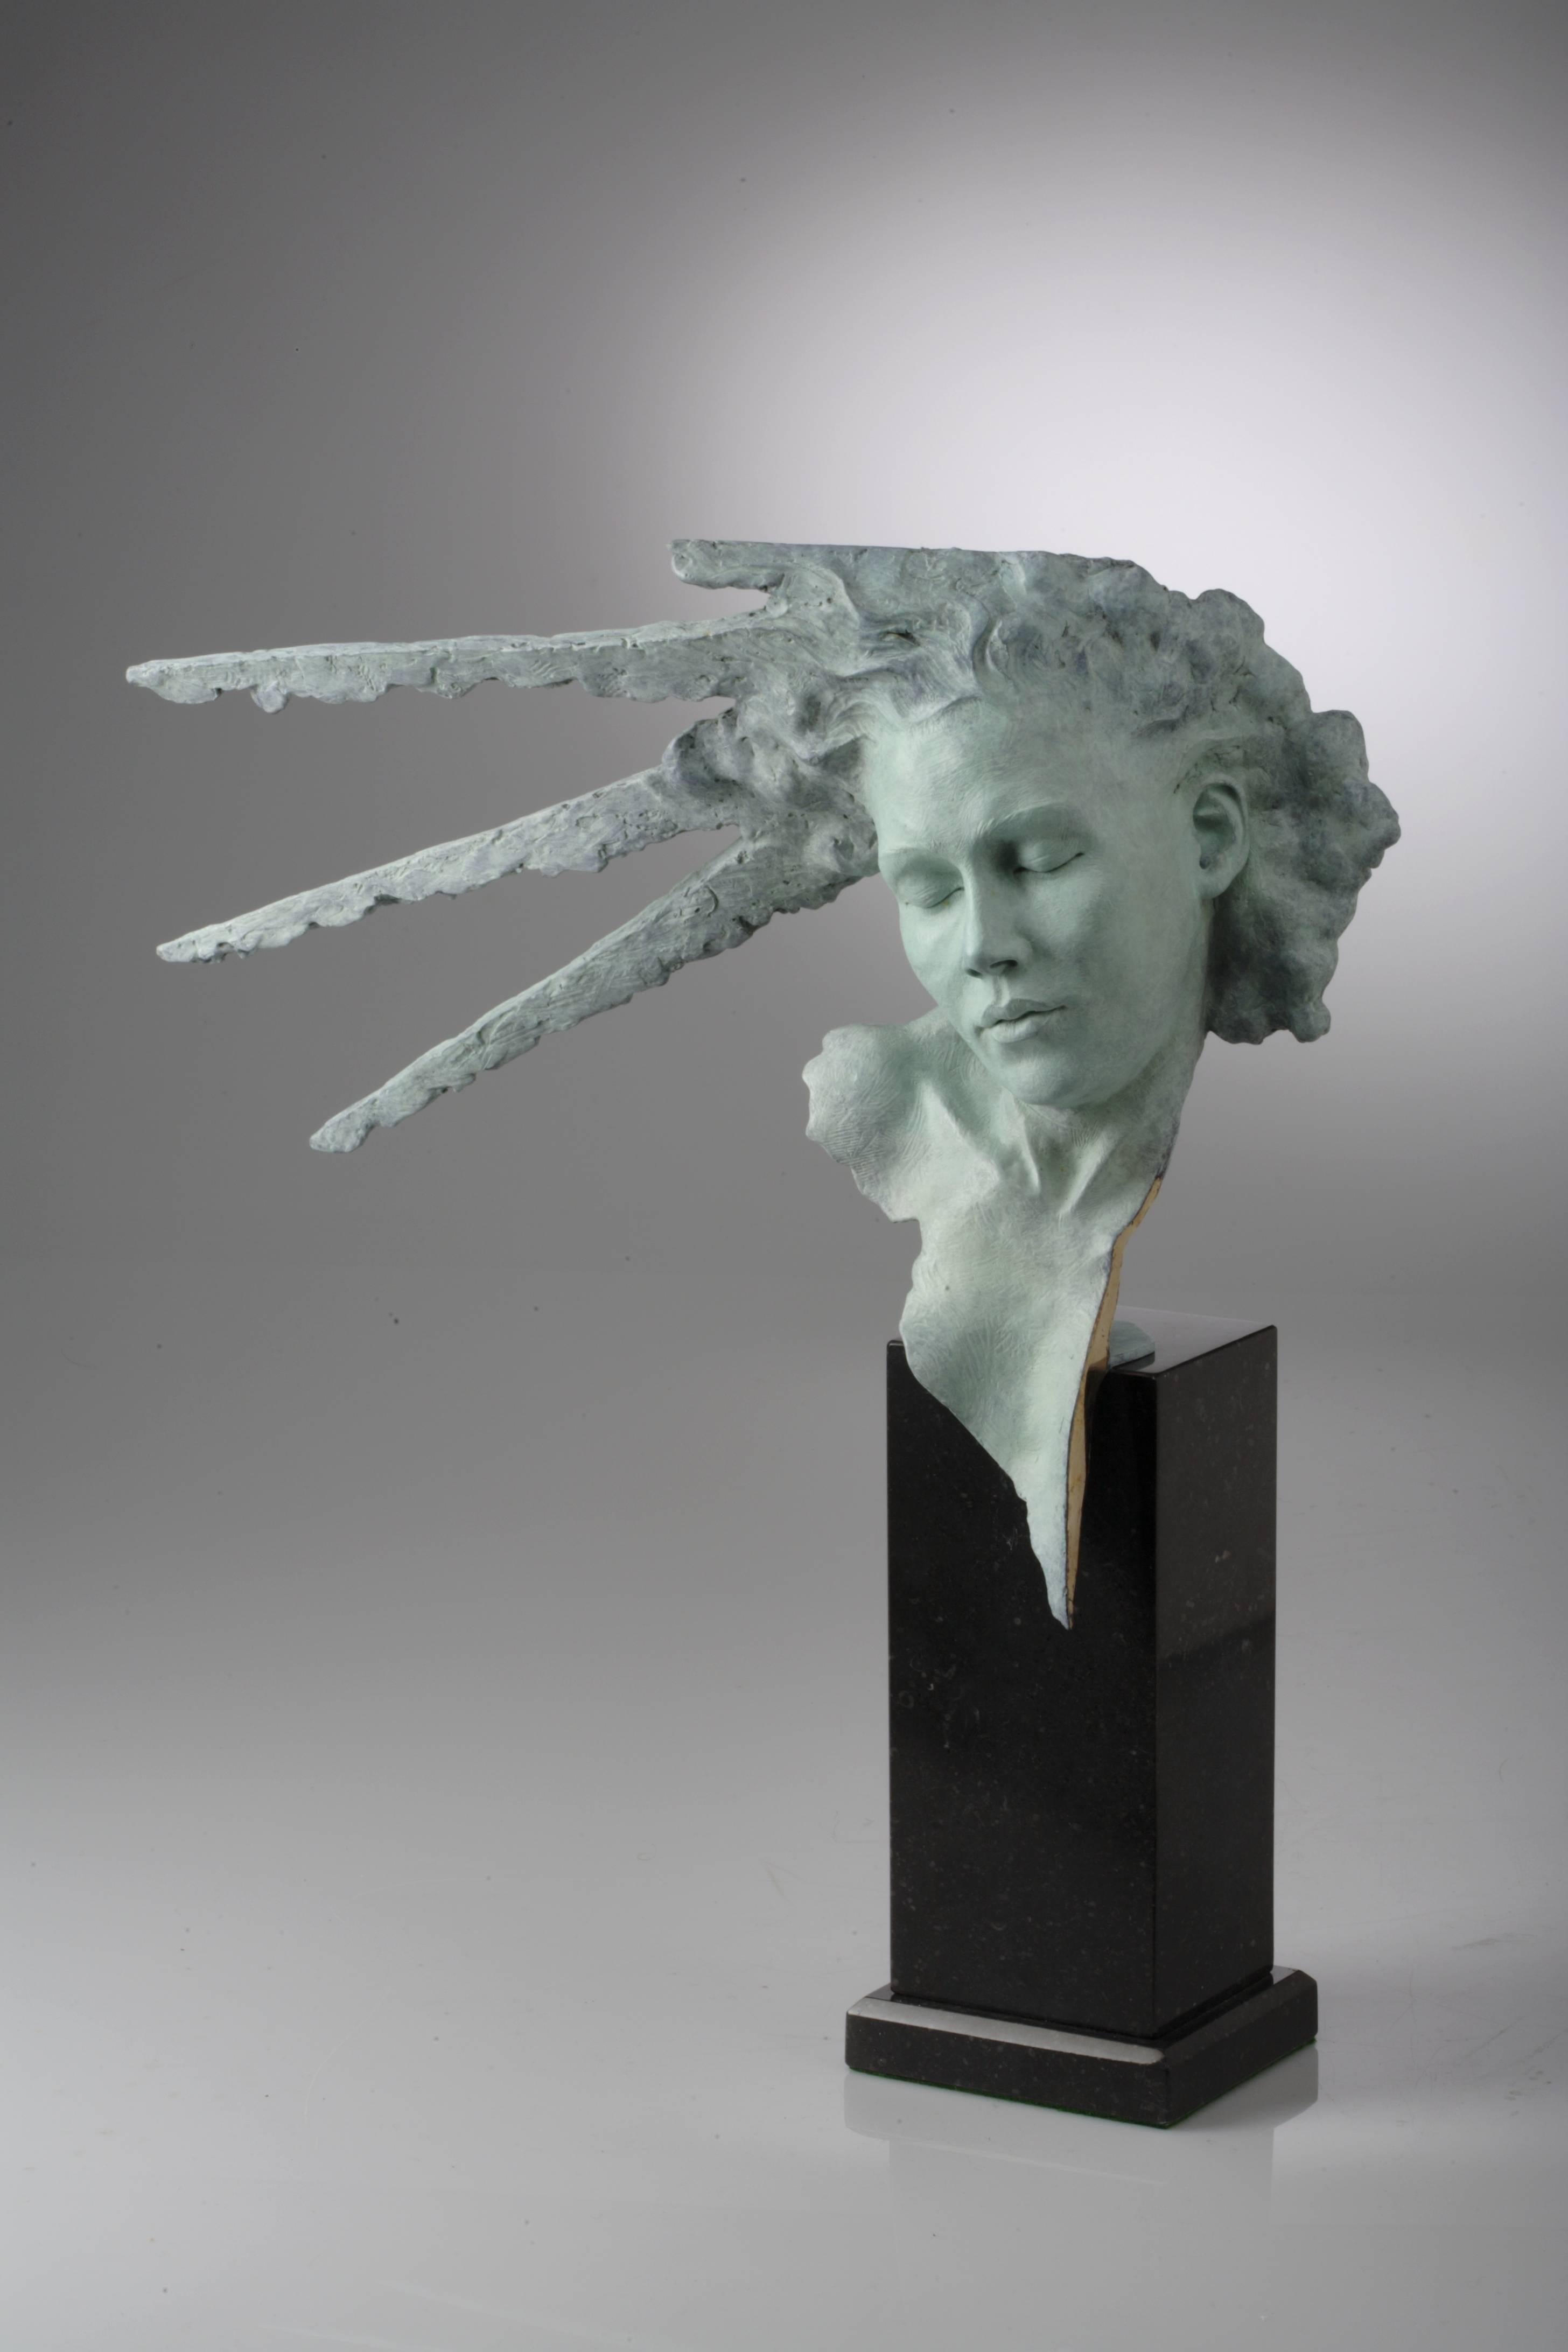 sunburst Mask" est une sculpture en bronze massif de Carl Payne inspirée de la mythologie grecque. Carl Payne est un sculpteur extrêmement talentueux, qui se concentre principalement sur la forme féminine et utilise souvent sa femme, une danseuse